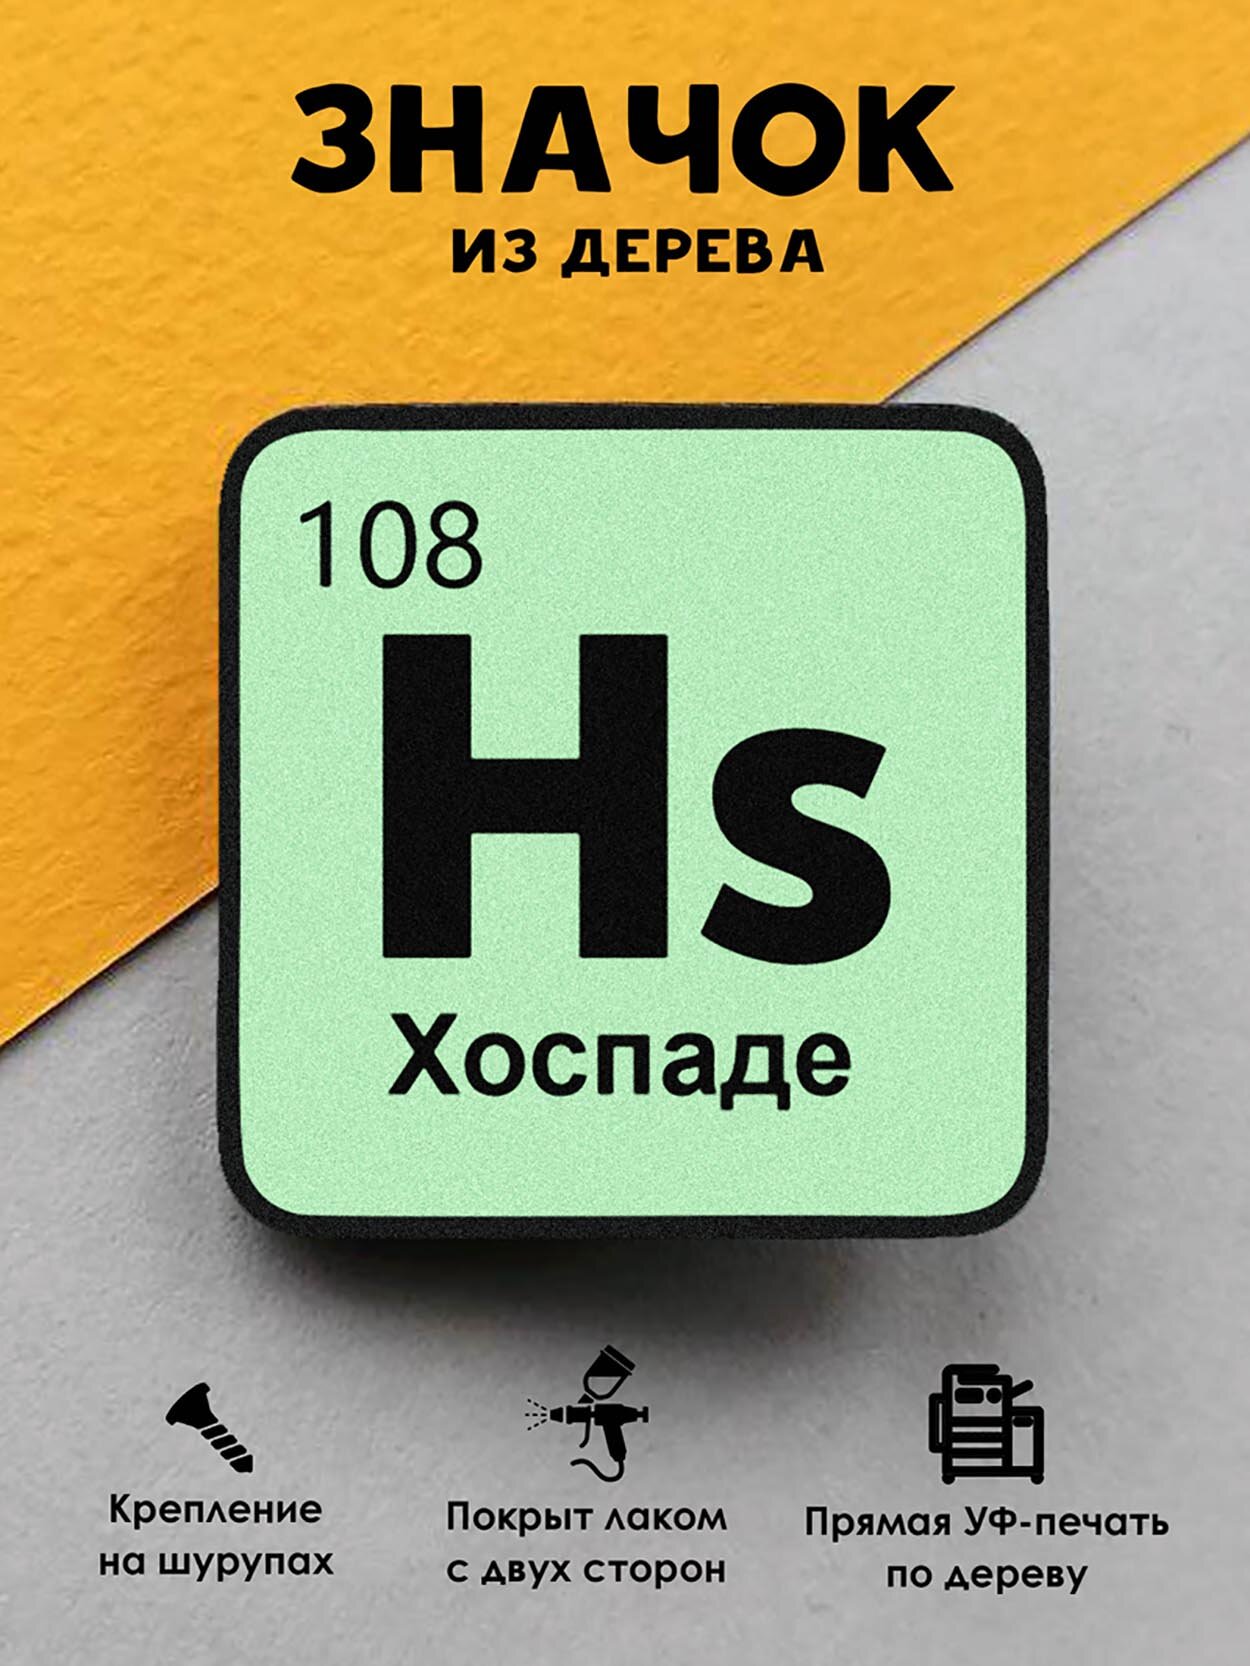 Значок деревянный "Химический элемент Хоспаде"